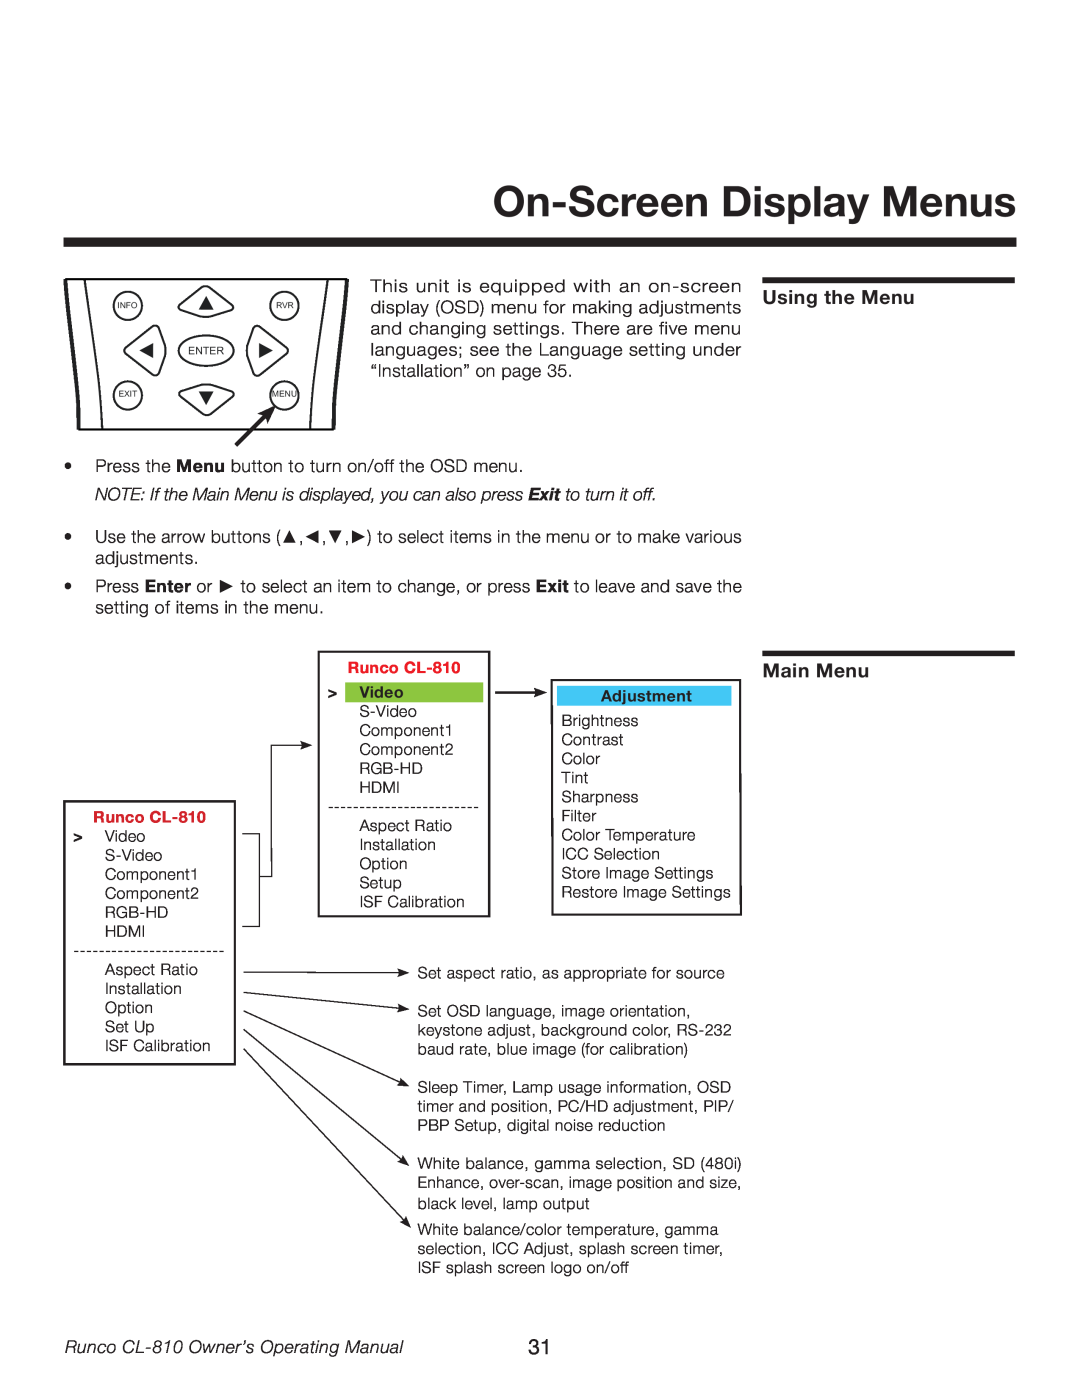 Runco manual On-Screen Display Menus, Using the Menu, Main Menu, Runco CL-810 Owner’s Operating Manual, Adjustment 